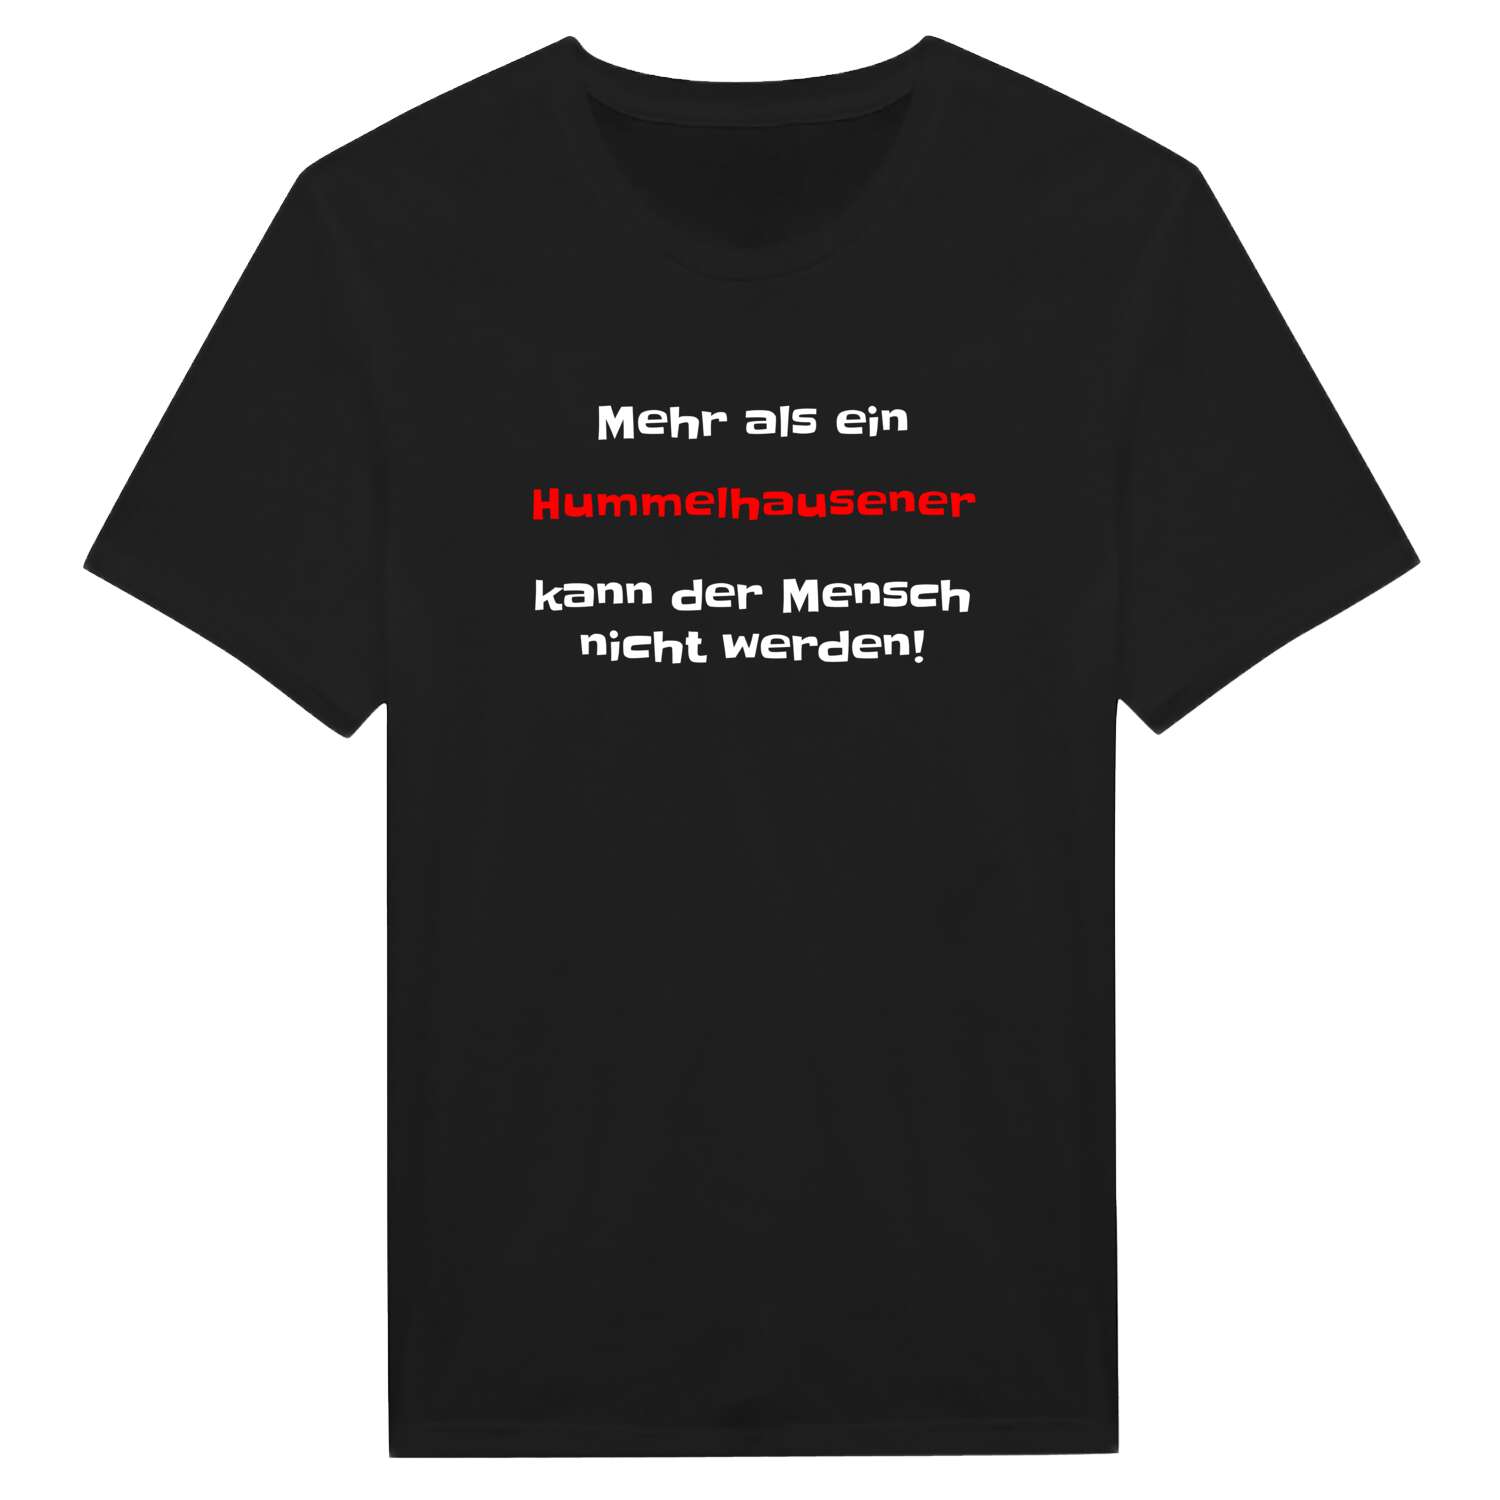 Hummelhausen T-Shirt »Mehr als ein«